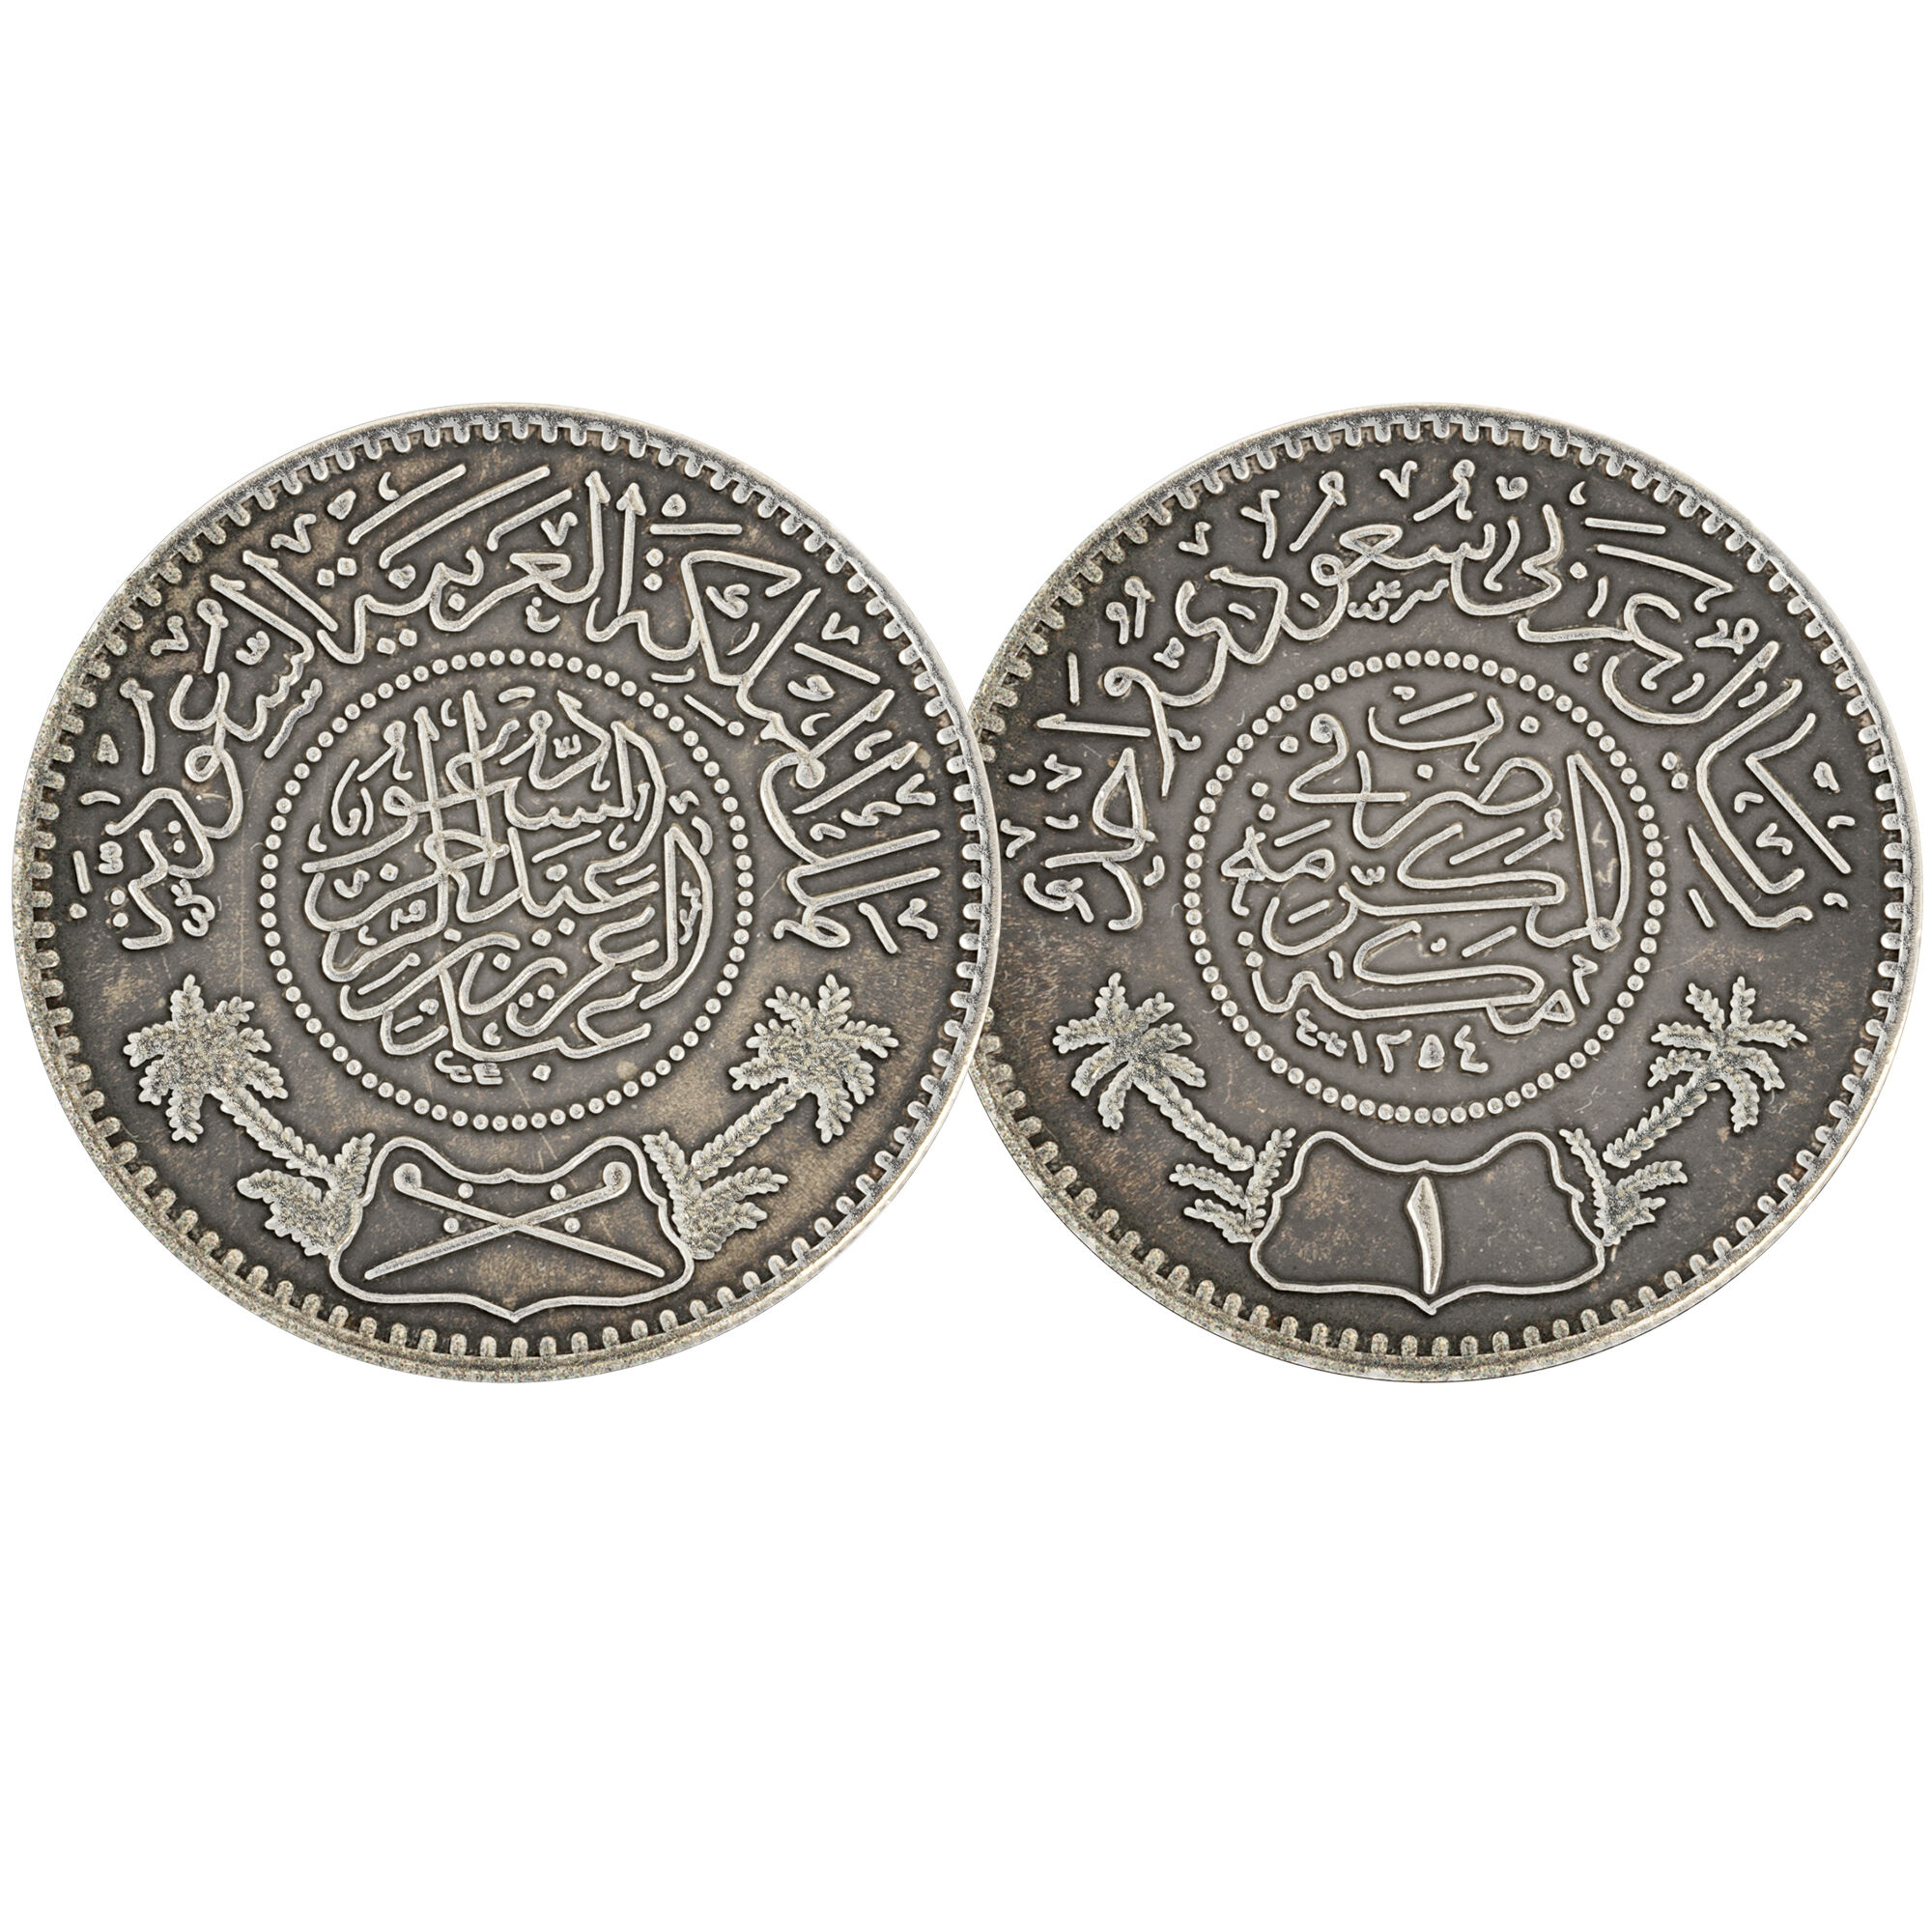 secret philadelphia mint world war ii silvercoin SJB b Coin